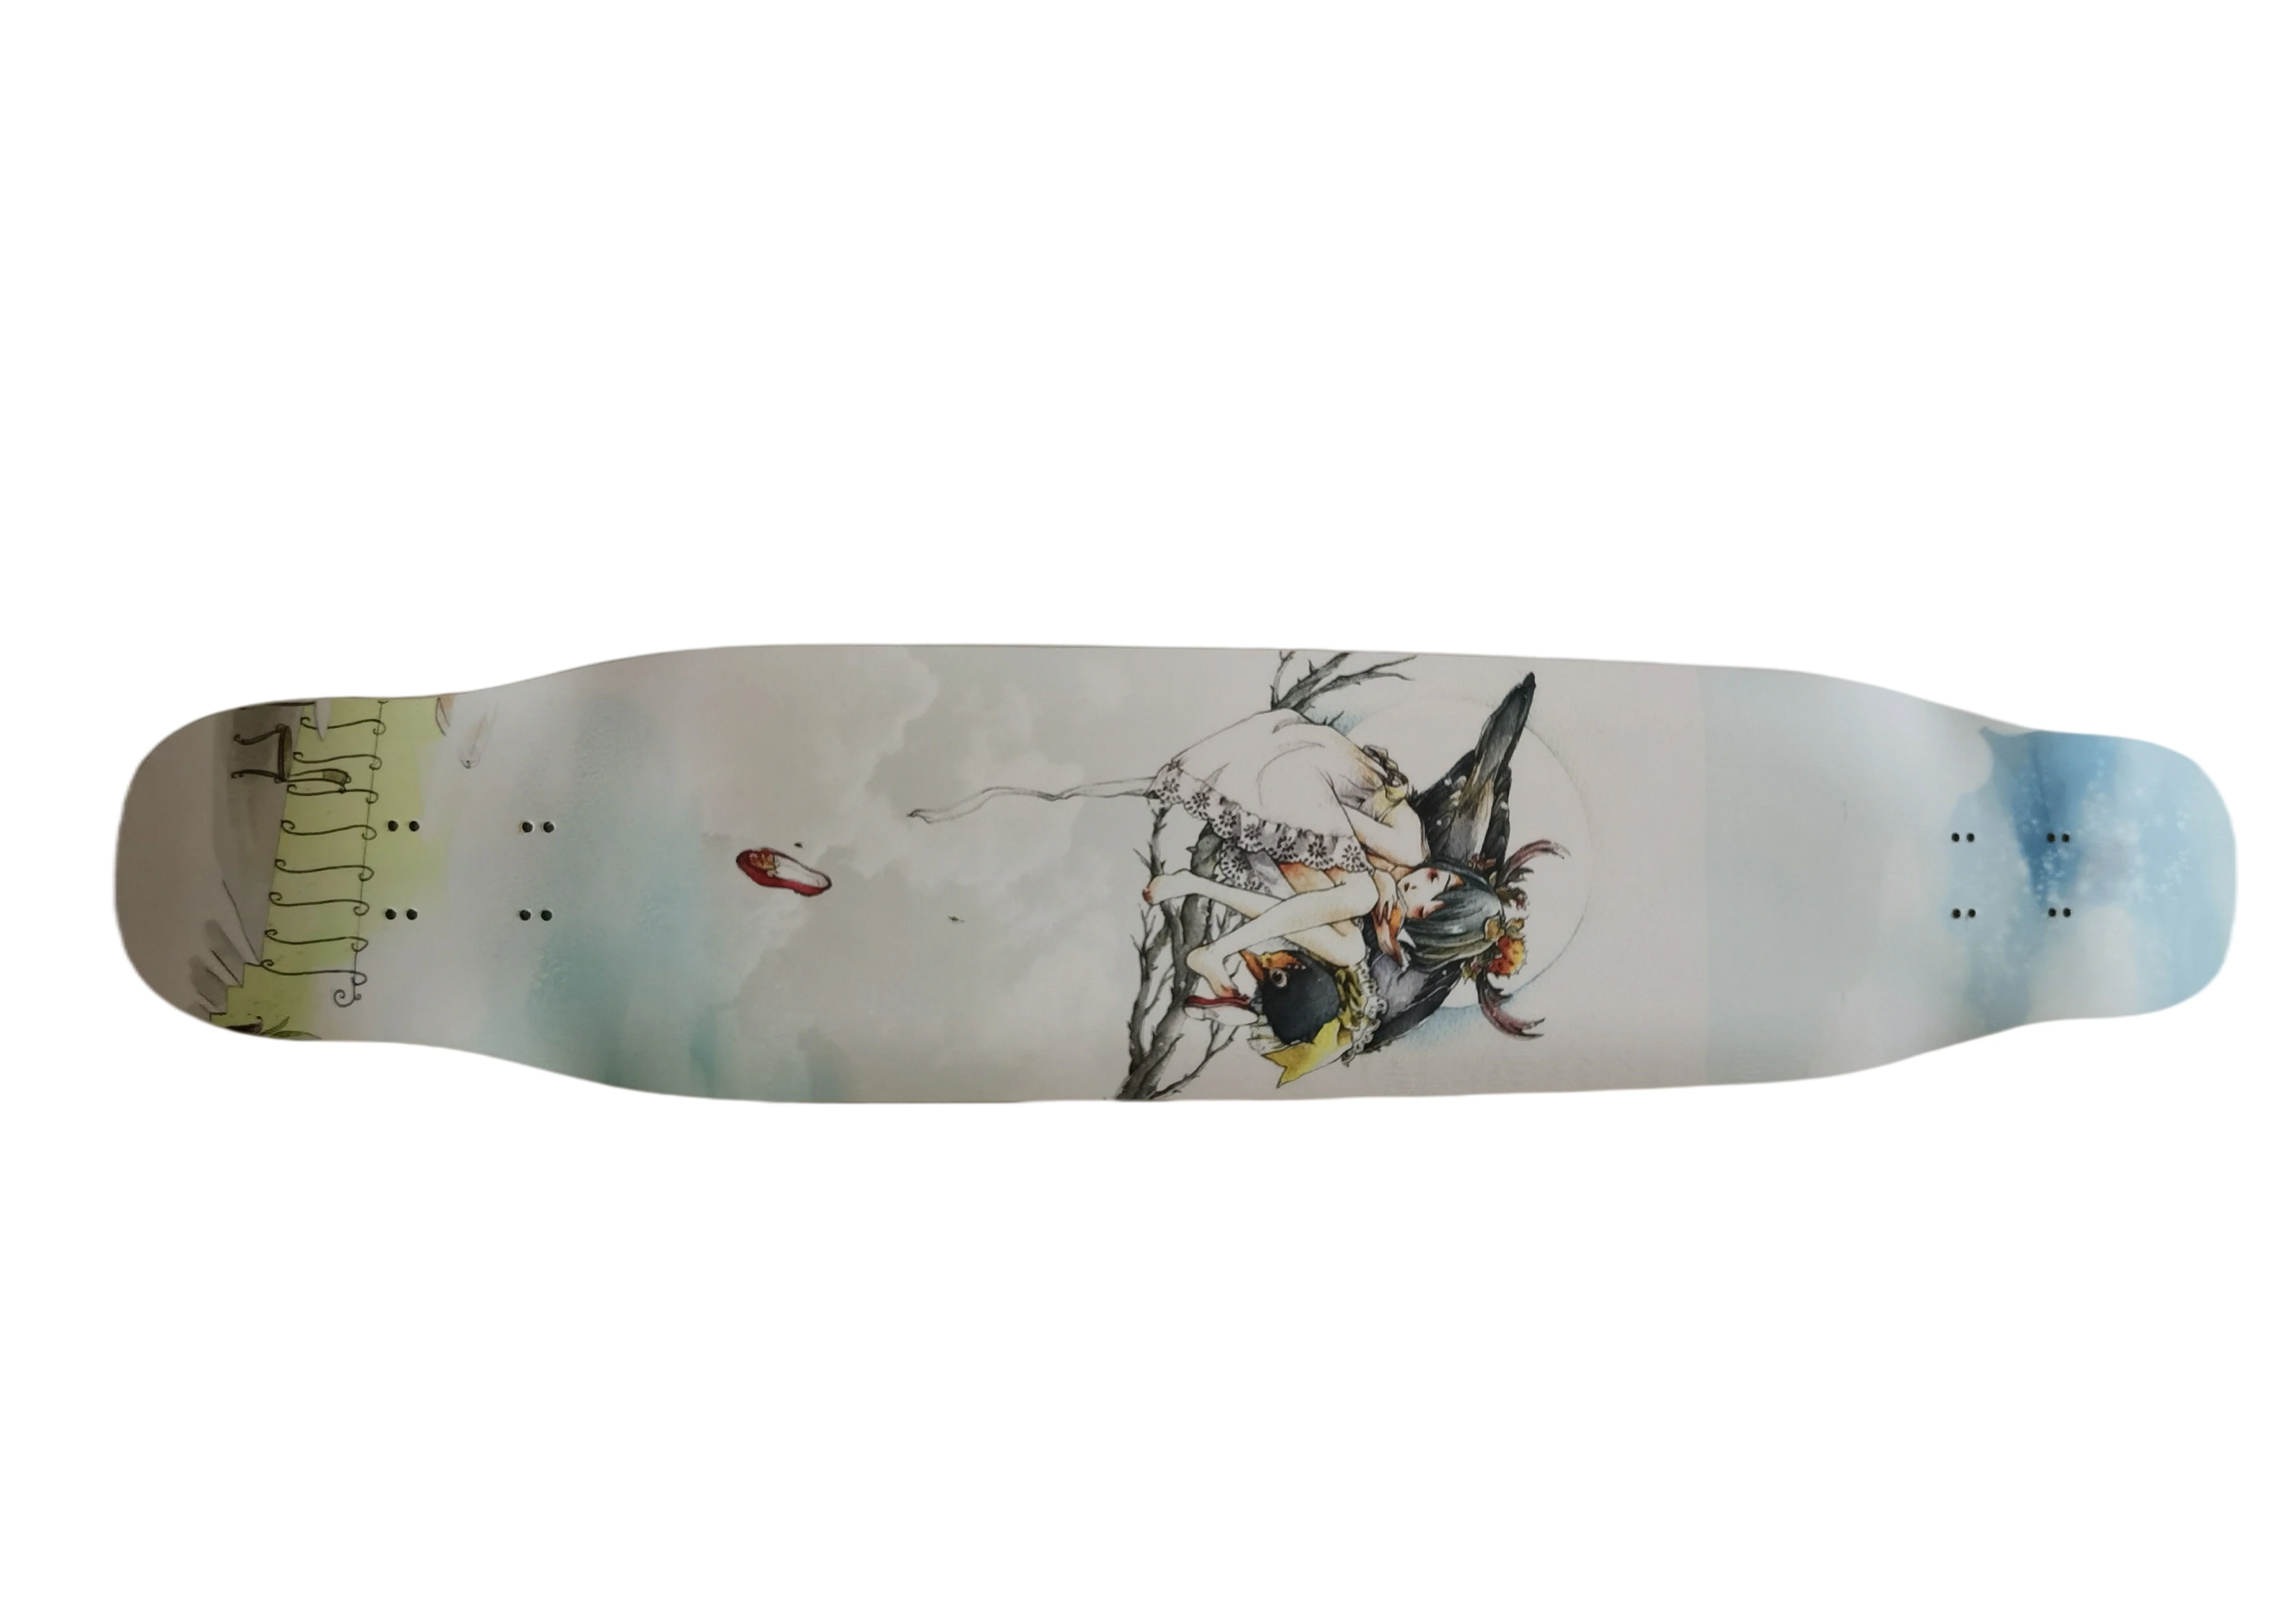 2022 Hot-Selling Candian Maple mezclada de baile de bambú Free Style Longboard Skateboard